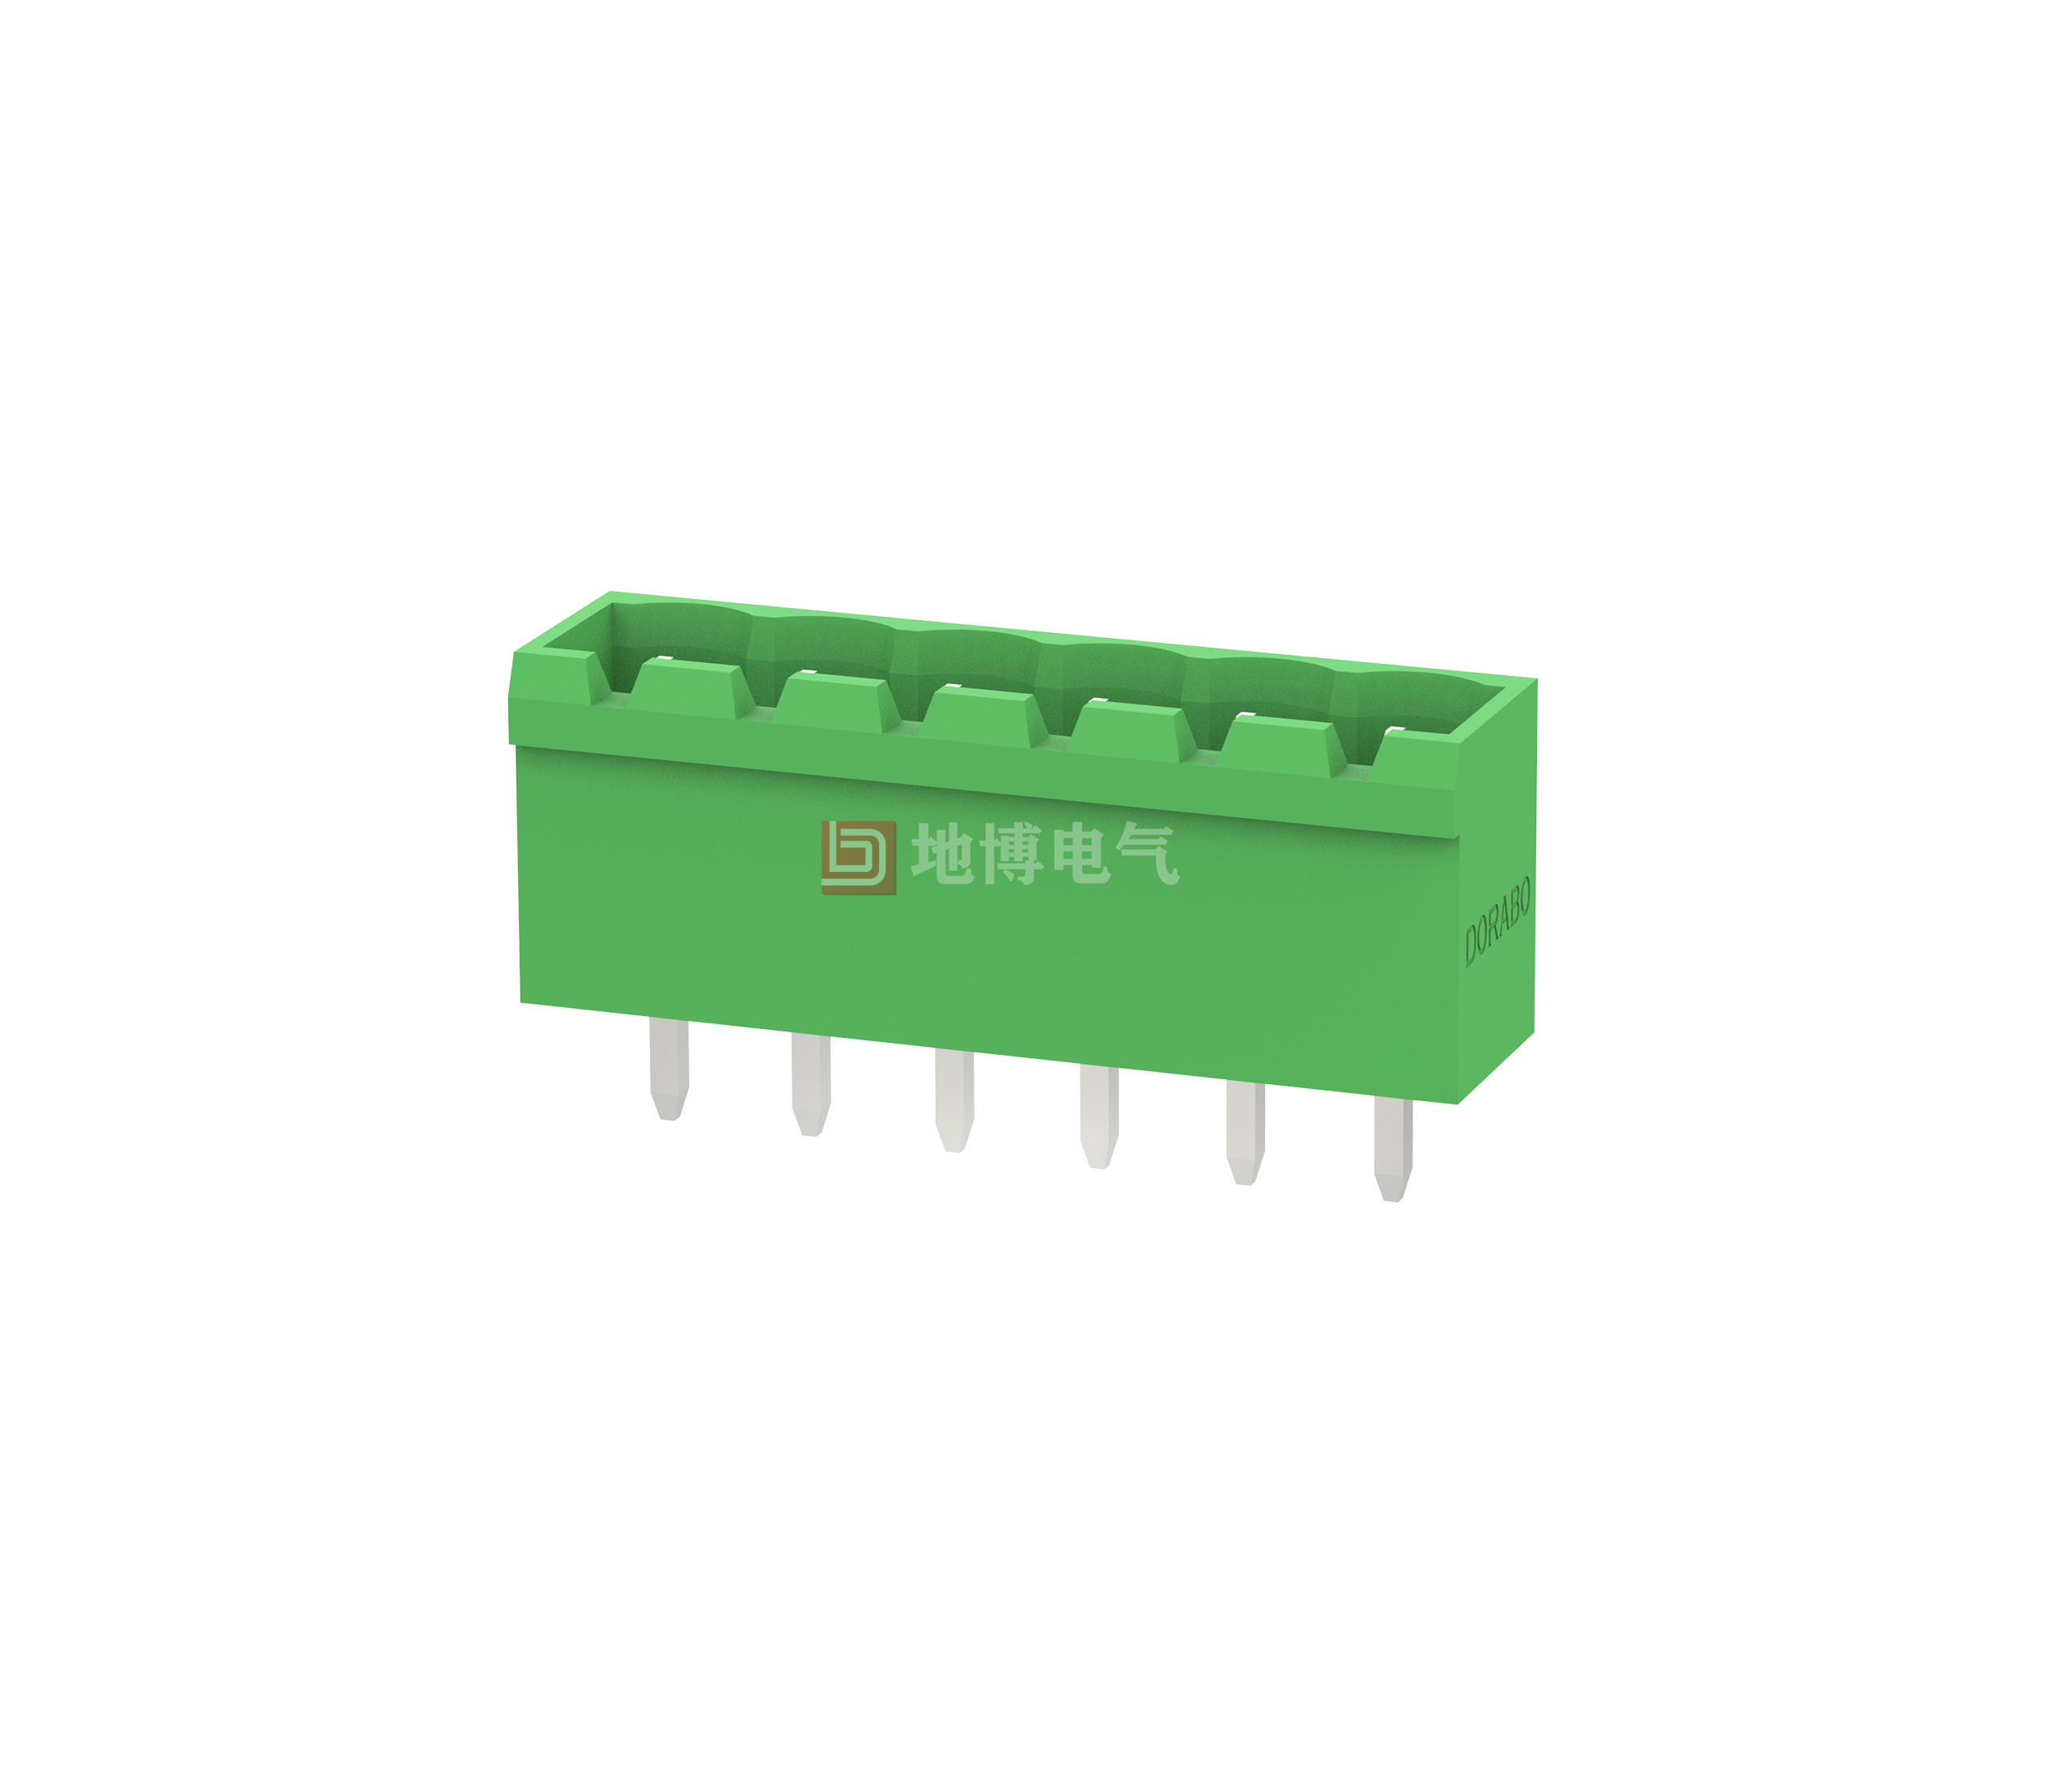 PCB socket DB2EVC-5.08